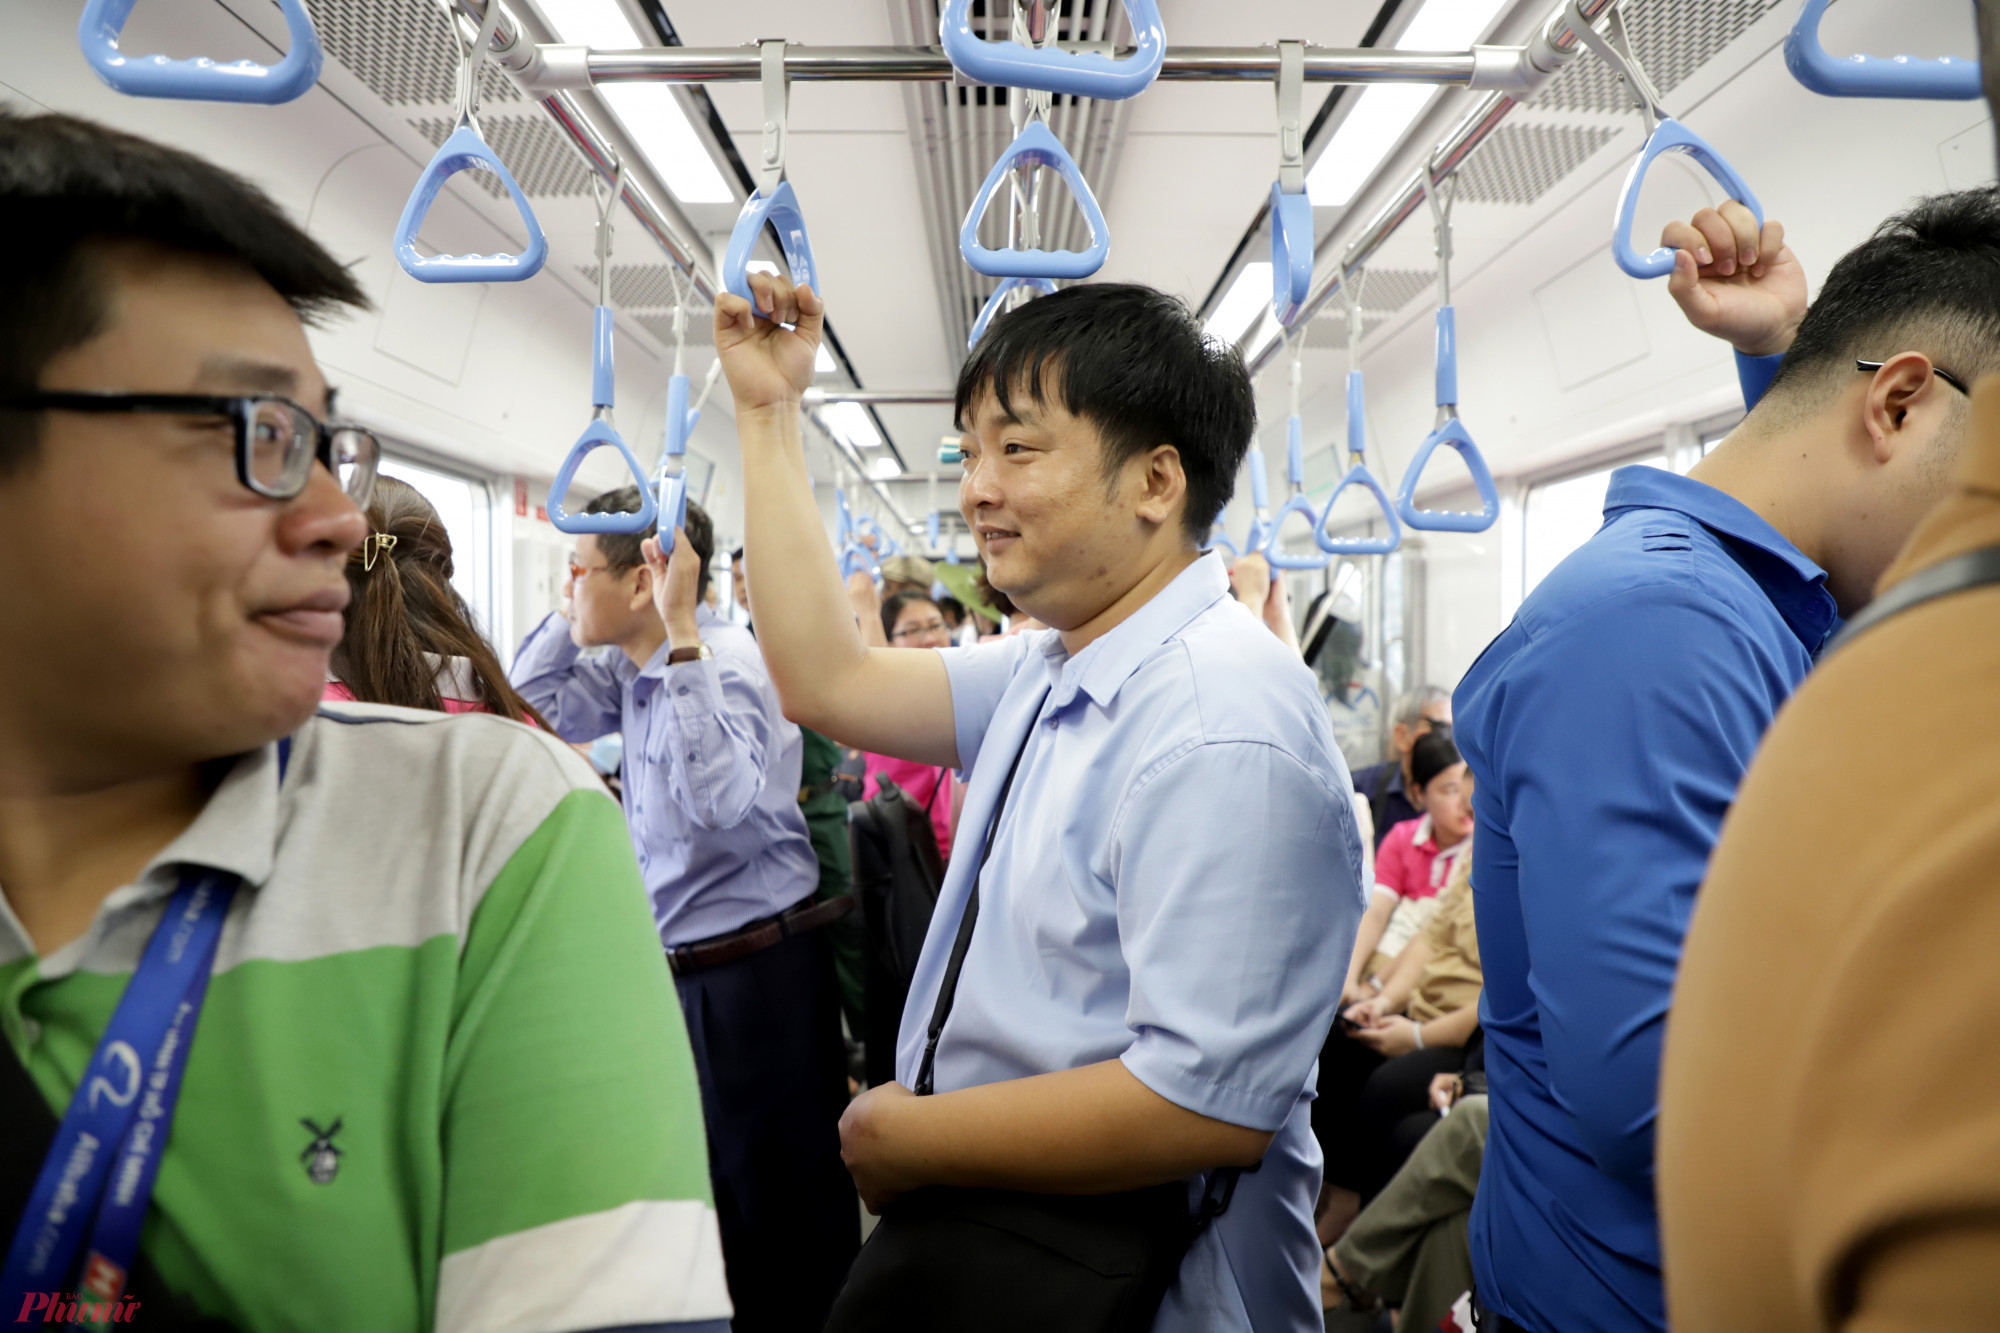 Trên tàu metro số 1 sẽ có các hàng ghế ngồi và lắp đặt thêm các tay cầm để hành khách đứng dọc hành làng khi đông khách.